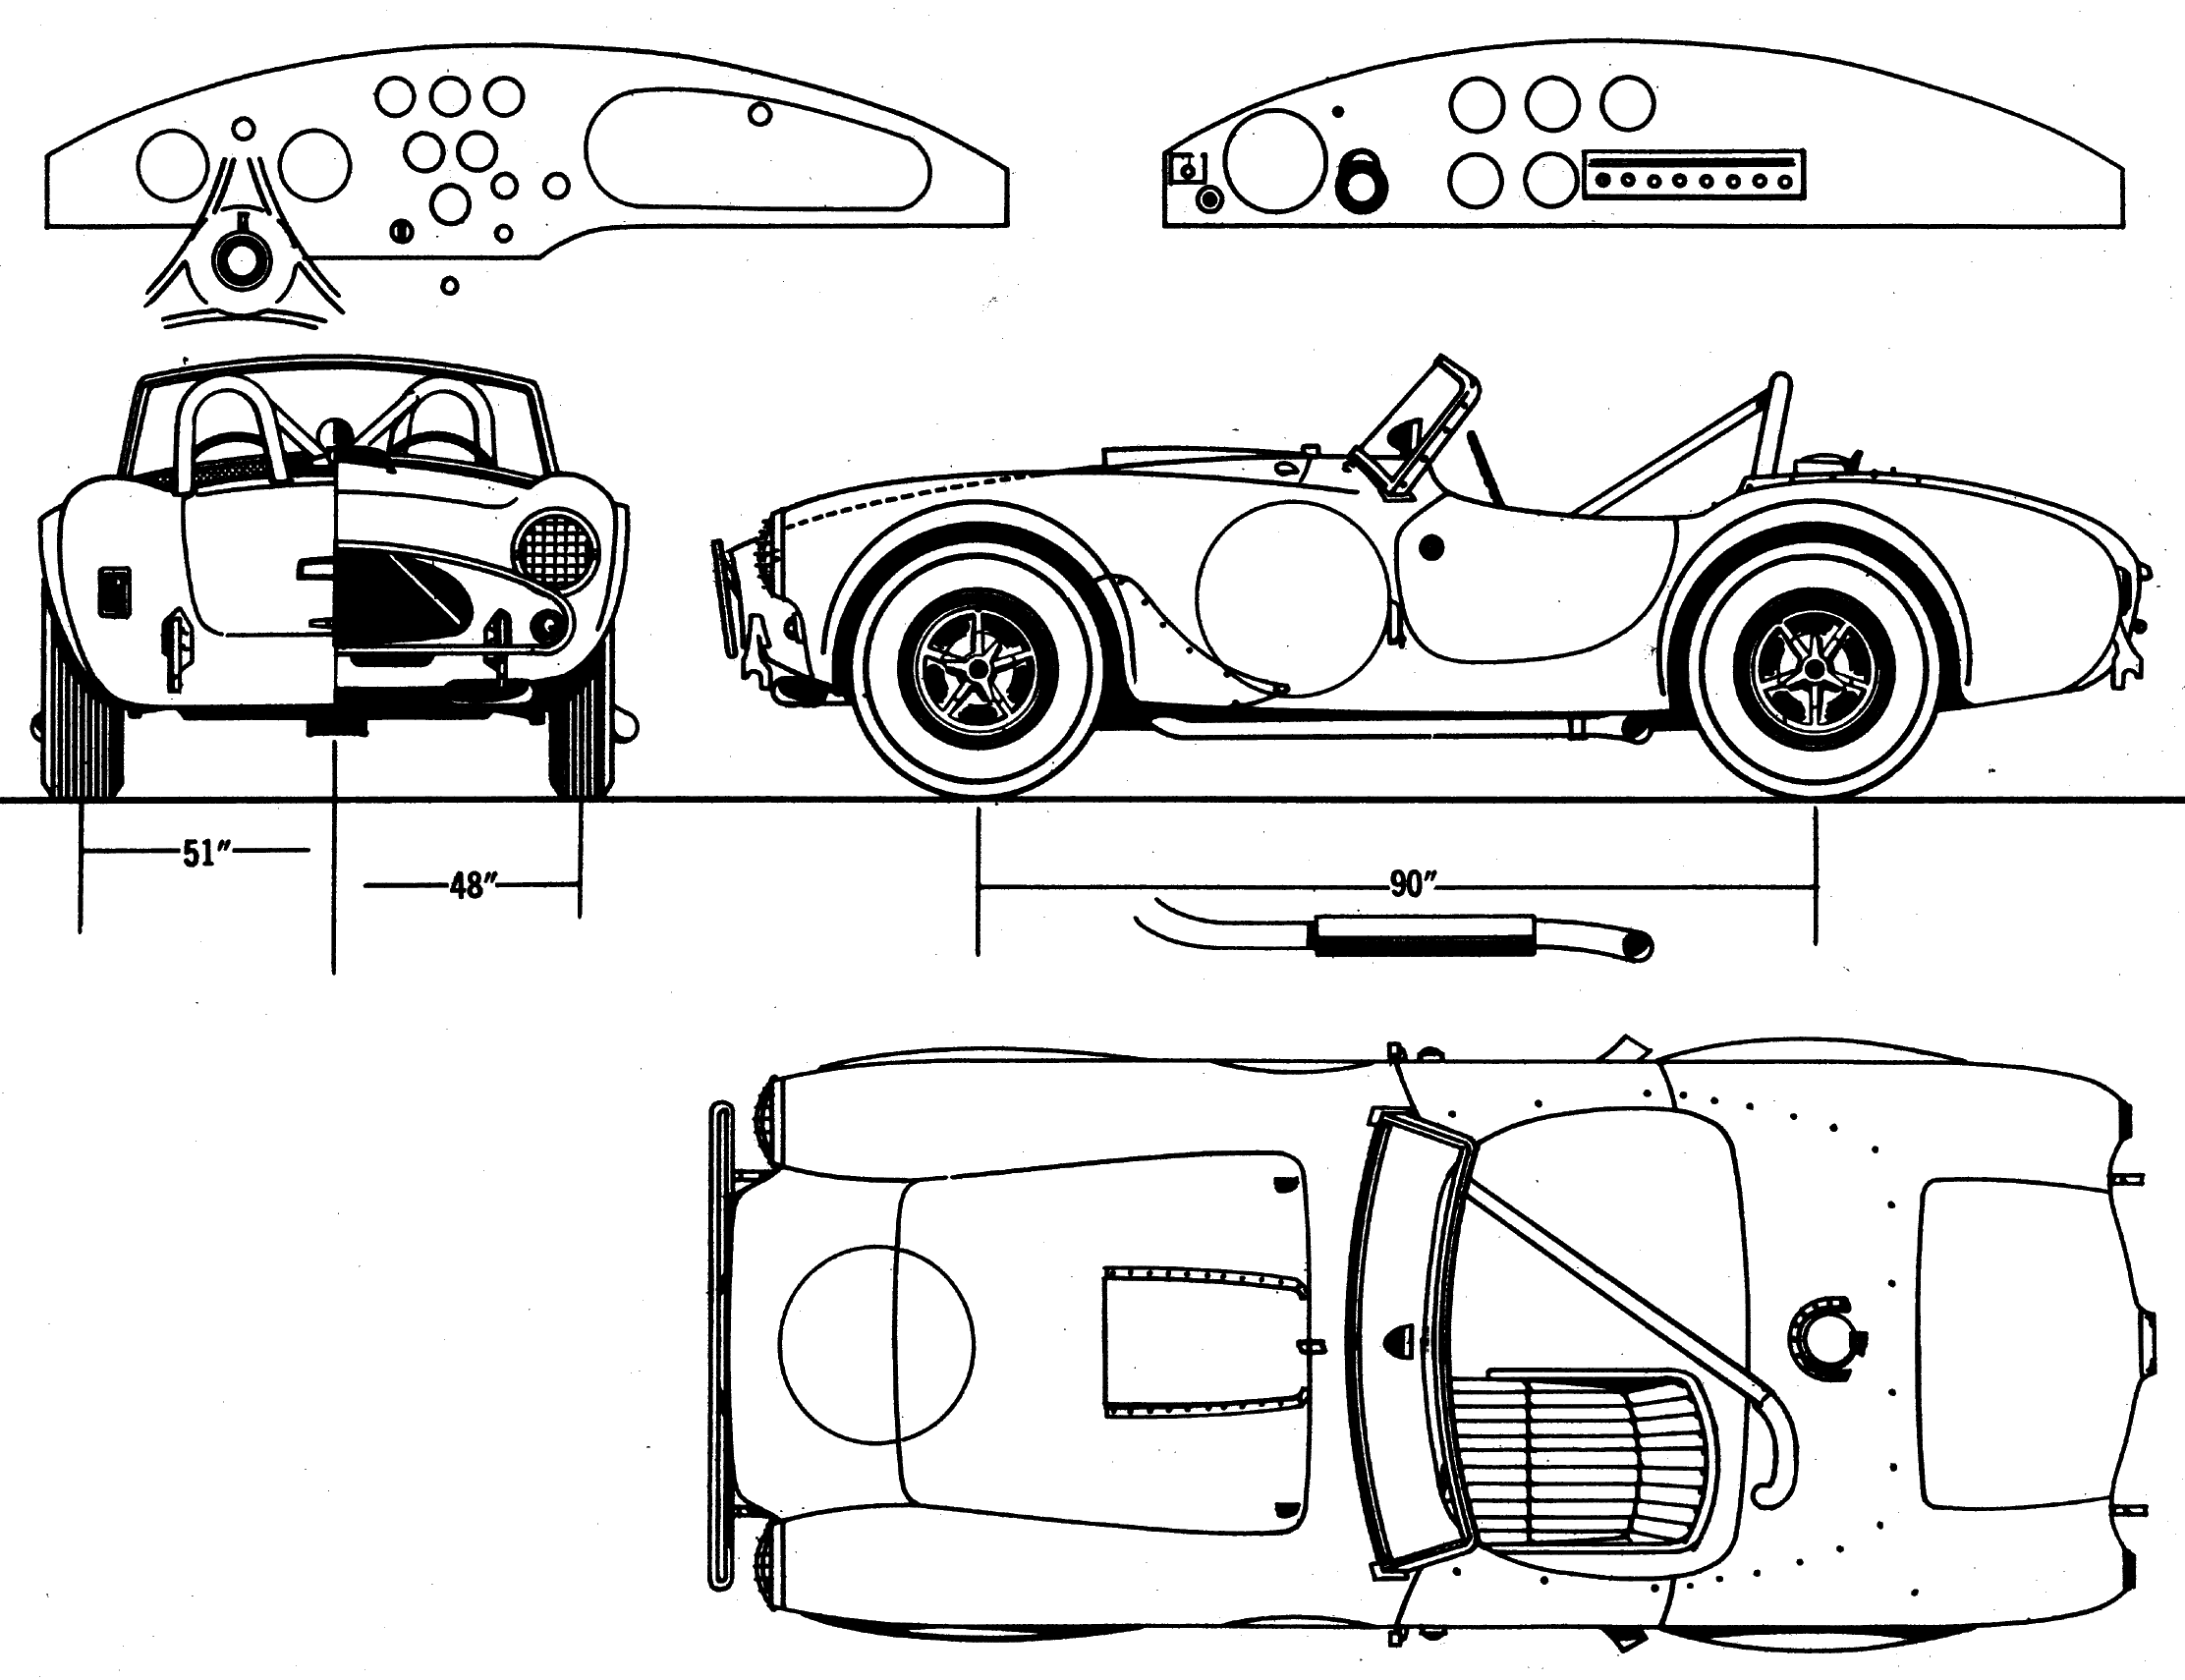 Shelby Cobra 289 blueprints